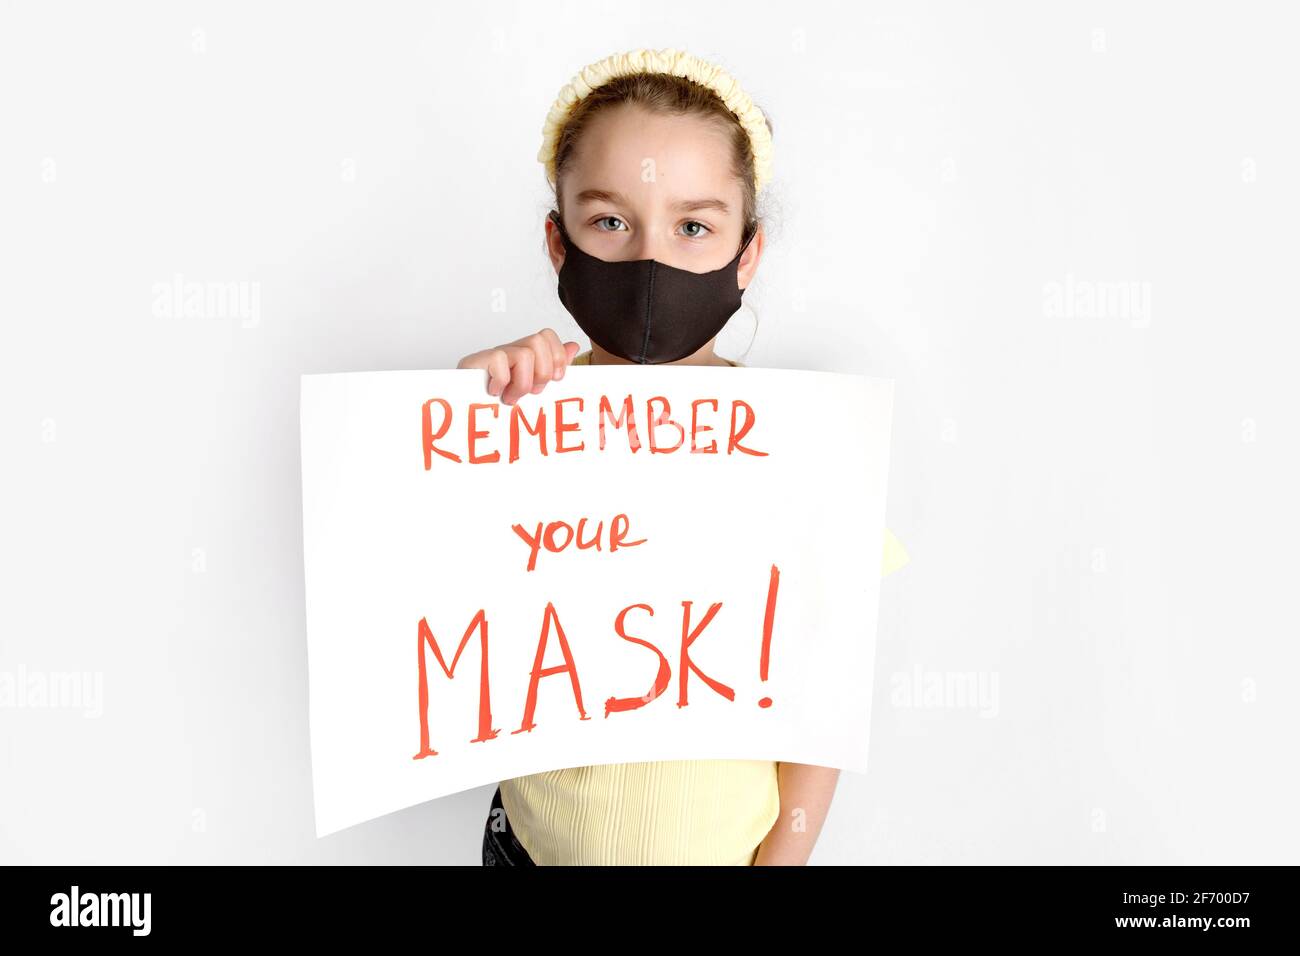 Ein Schulmädchen in einer schwarzen Schutzmaske lenkt die Aufmerksamkeit auf die Korrektheit und das obligatorische Tragen von Schutzmasken. Stockfoto